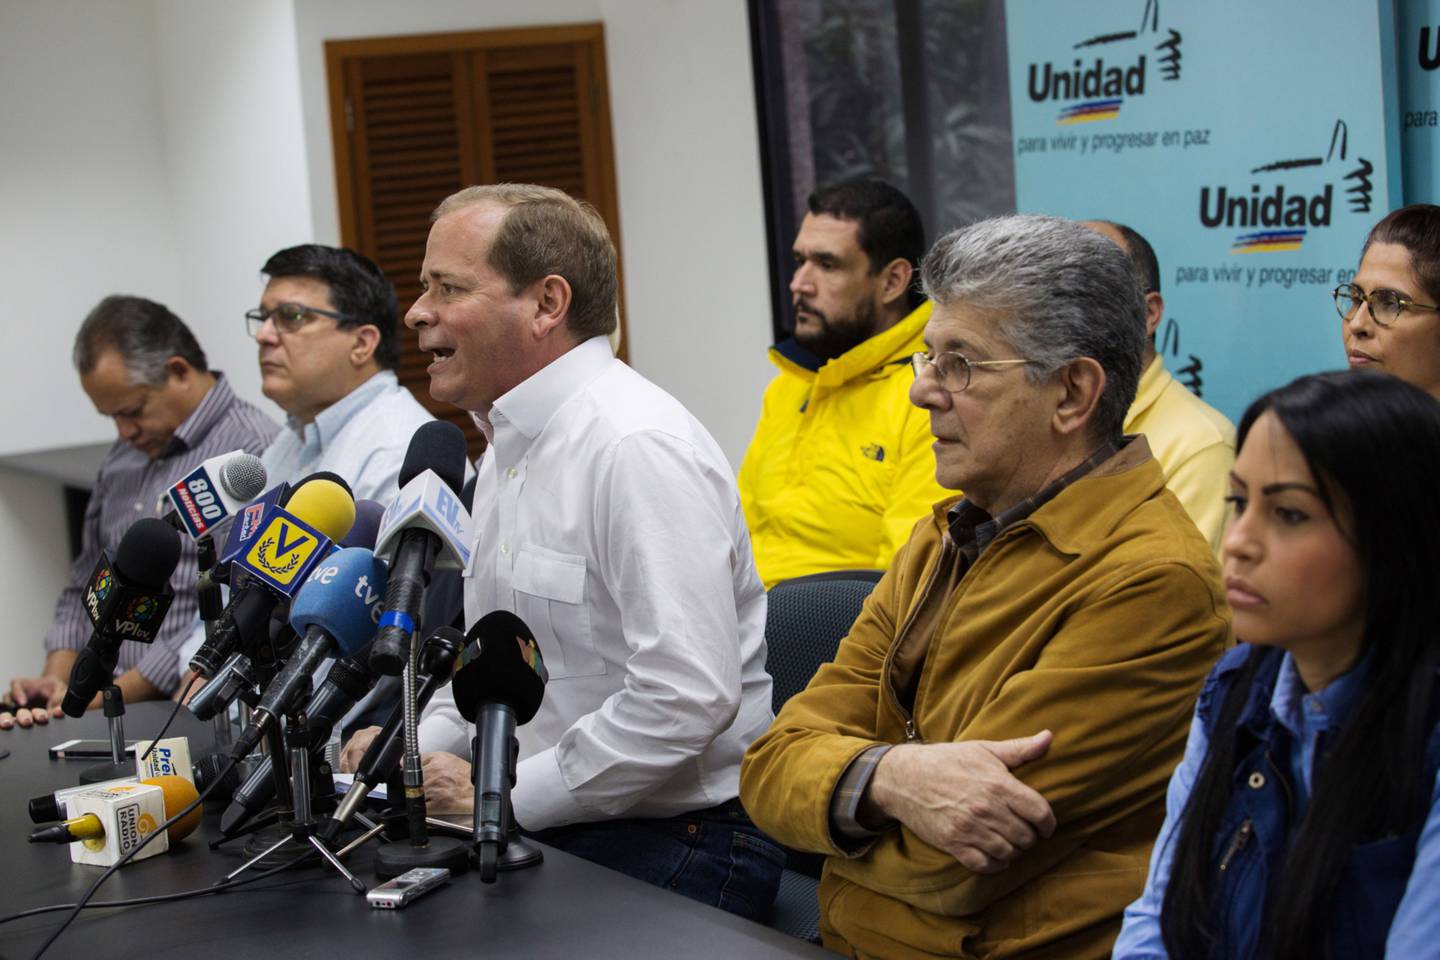 Capriles instó a sus colegas de la oposición a postular candidatos unitarios, en la tarjeta de la Mesa de la Unidad Democrática (MUD).dfd